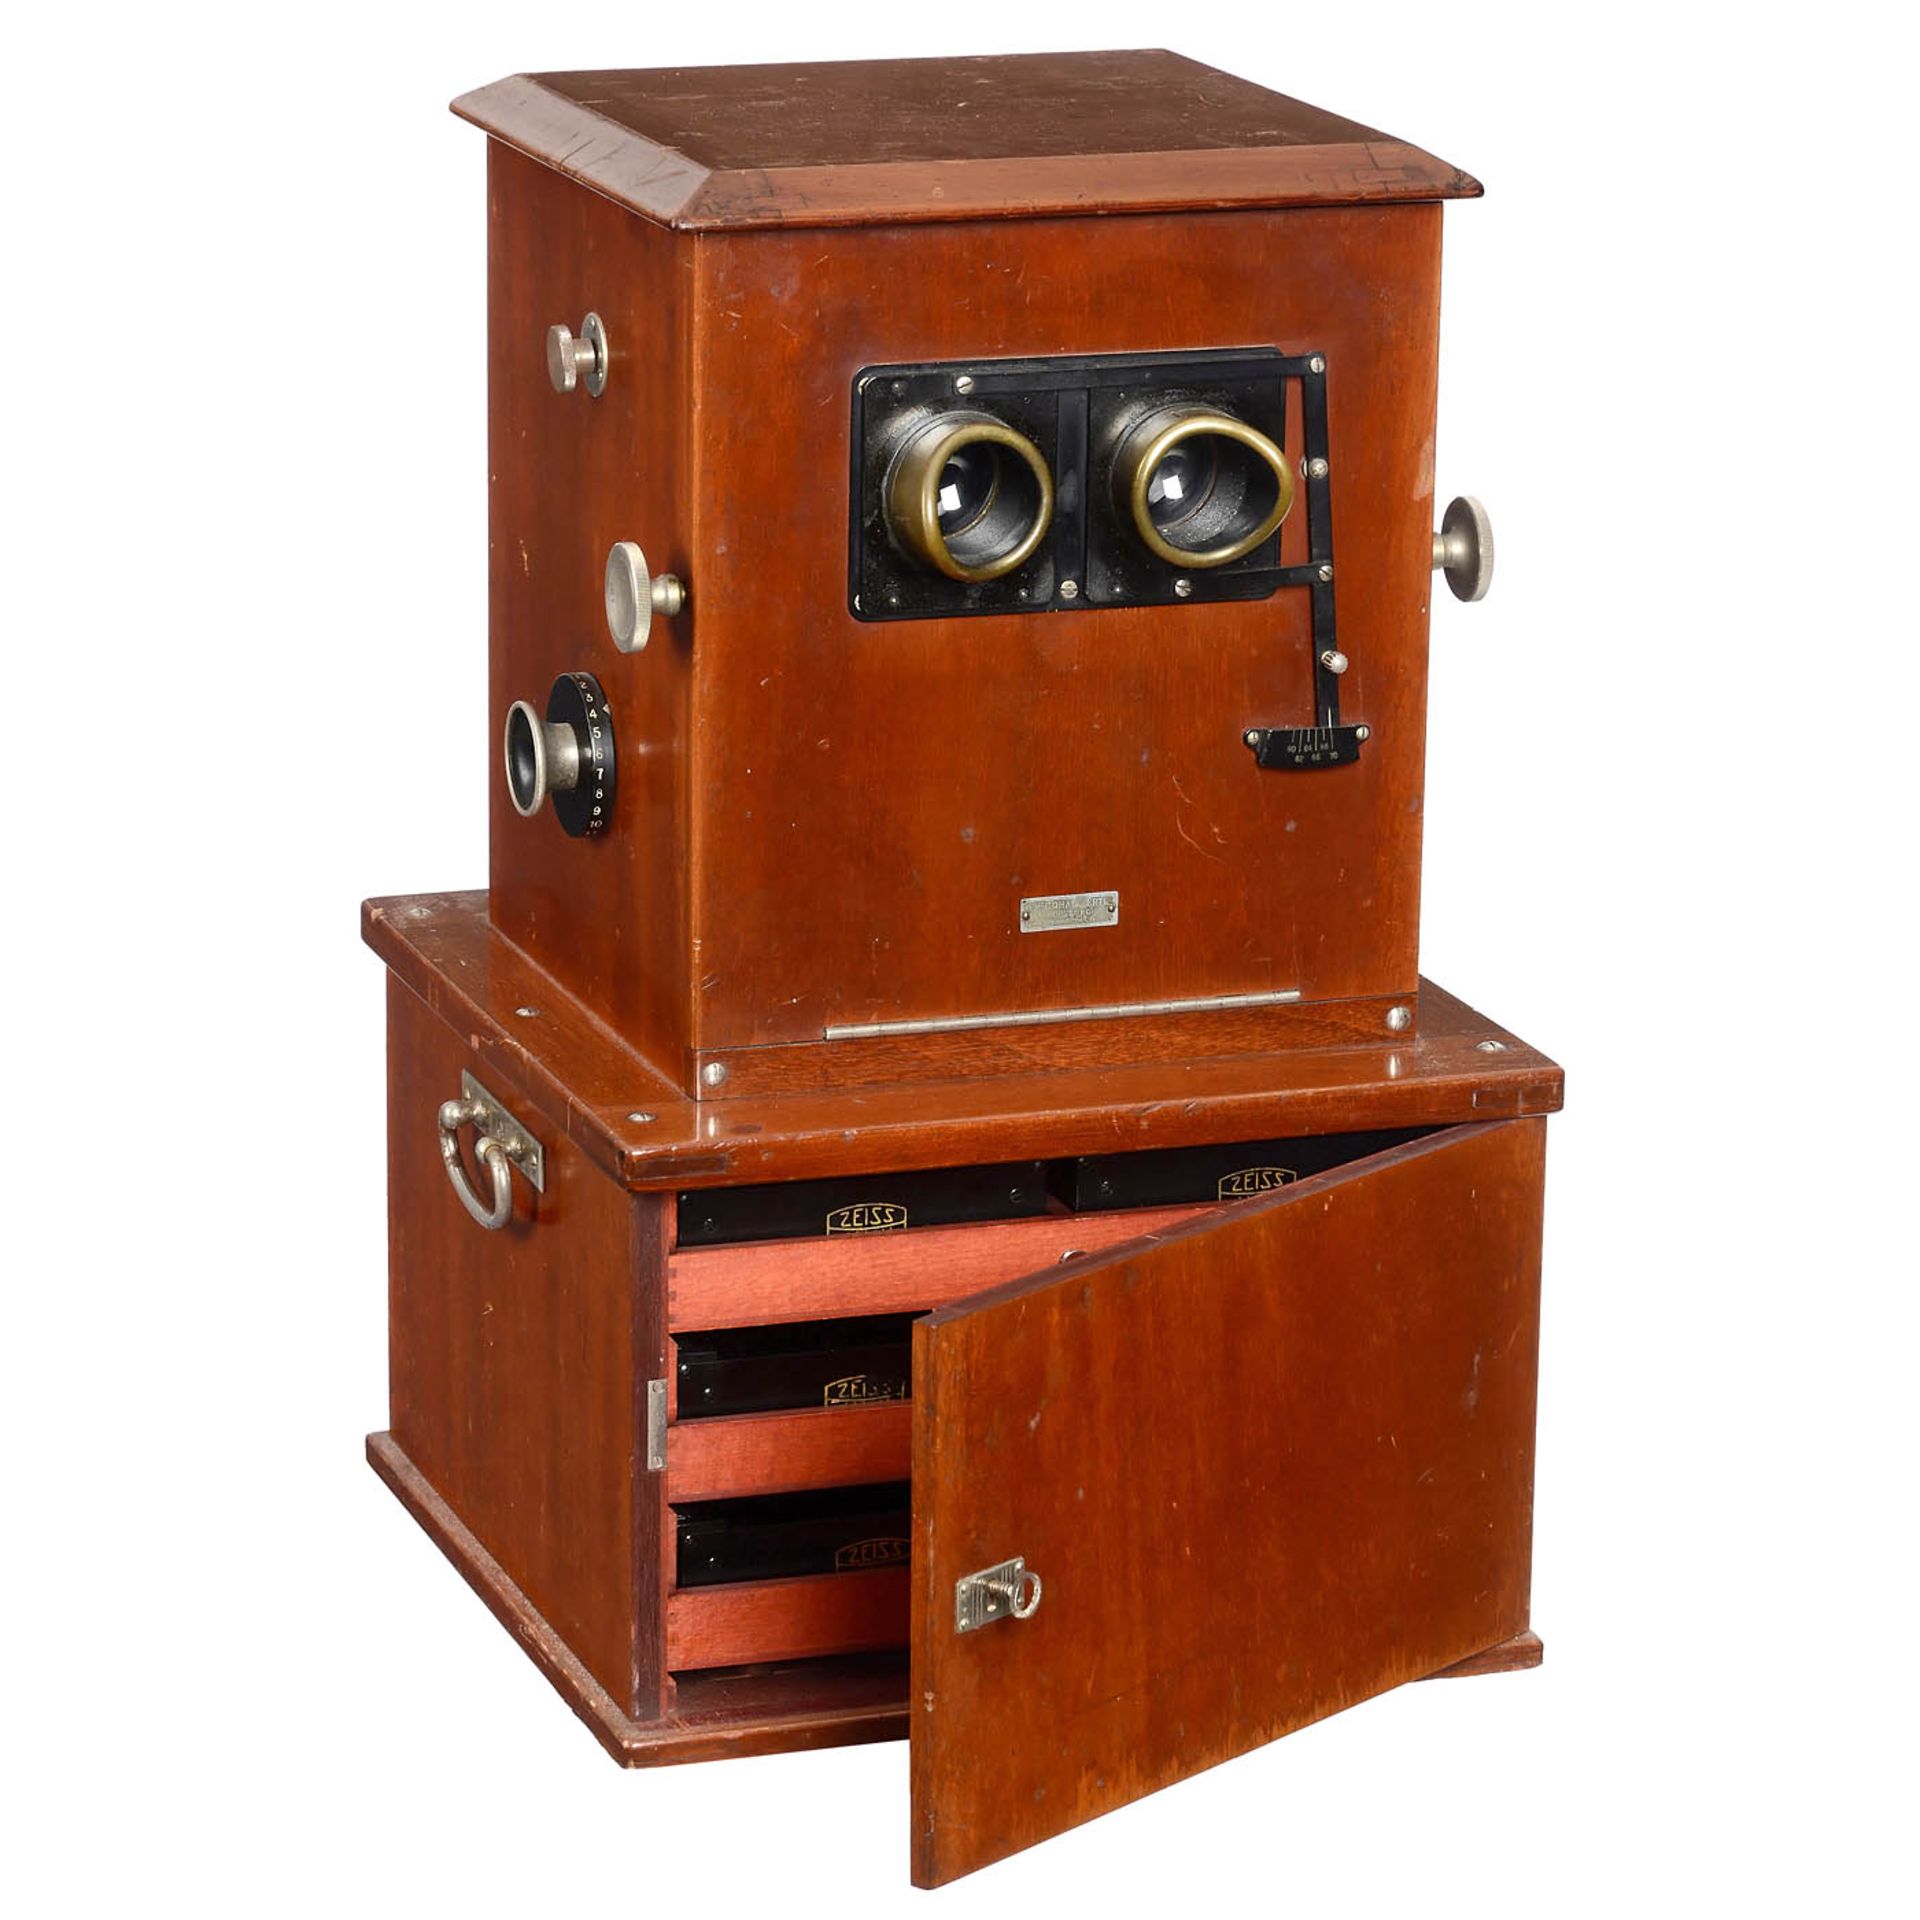 Ica Multiplast Stereo Viewer, 1920 onwards